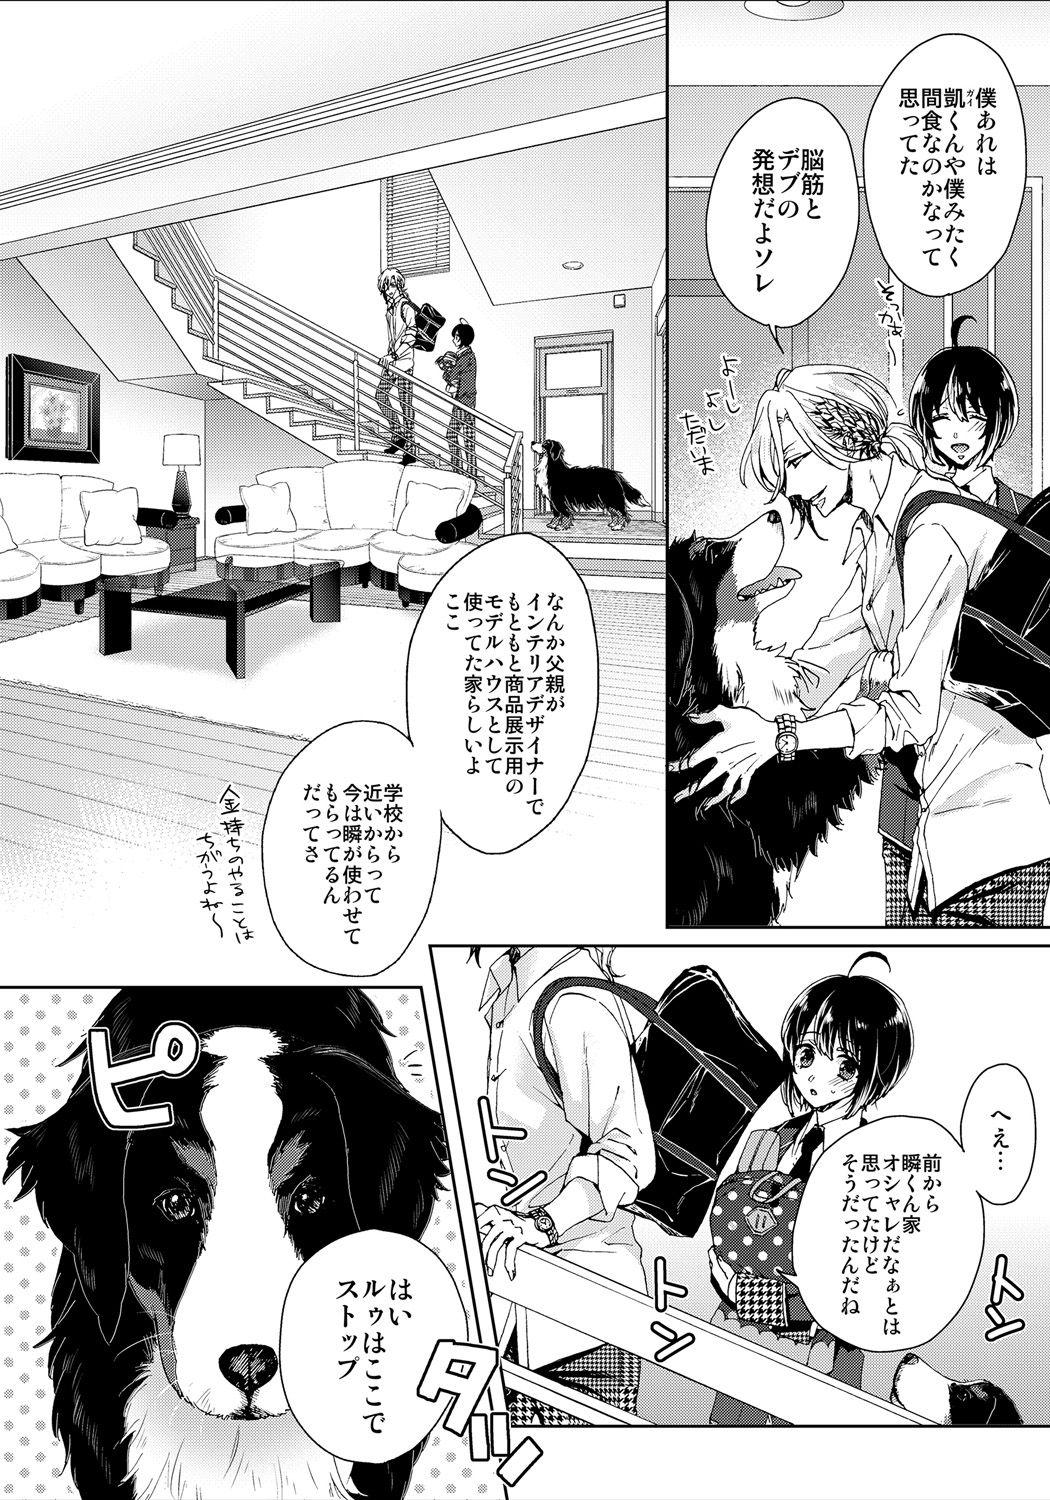 Gostosas [Saotome Mokono] Ijimerare ~"Onna" no Boku to Kainushi Sannin~ 8 Teen Sex - Page 4